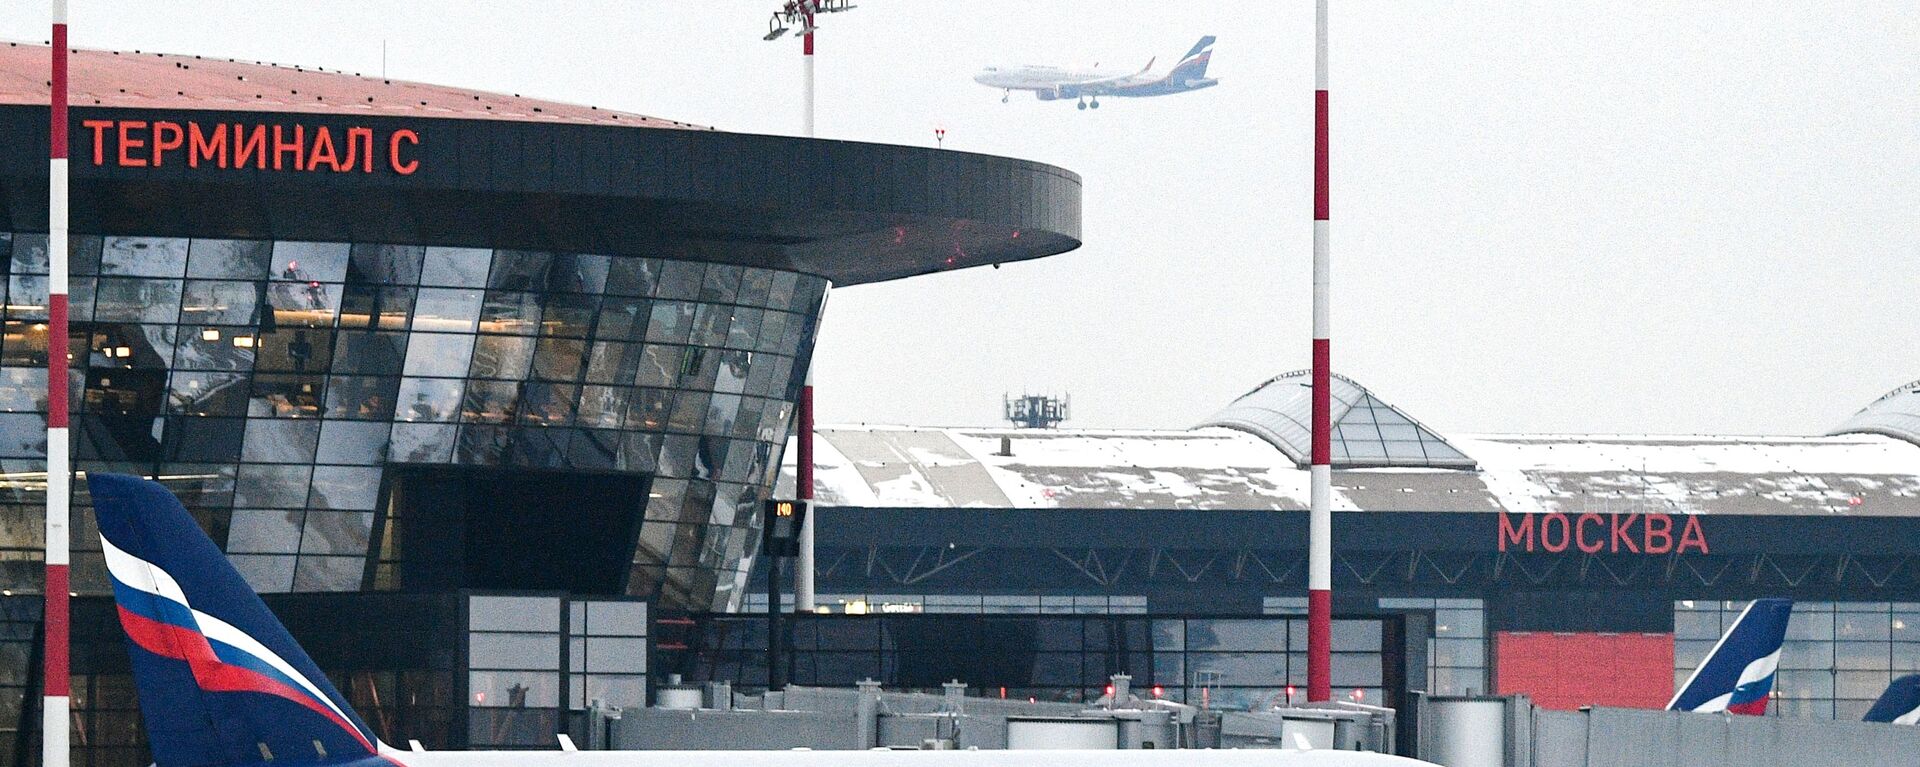 مطار شيريمتيفو، الطيران الروسي آيروفلوت، موسكو، روسيا مارس 2021 - سبوتنيك عربي, 1920, 23.04.2021